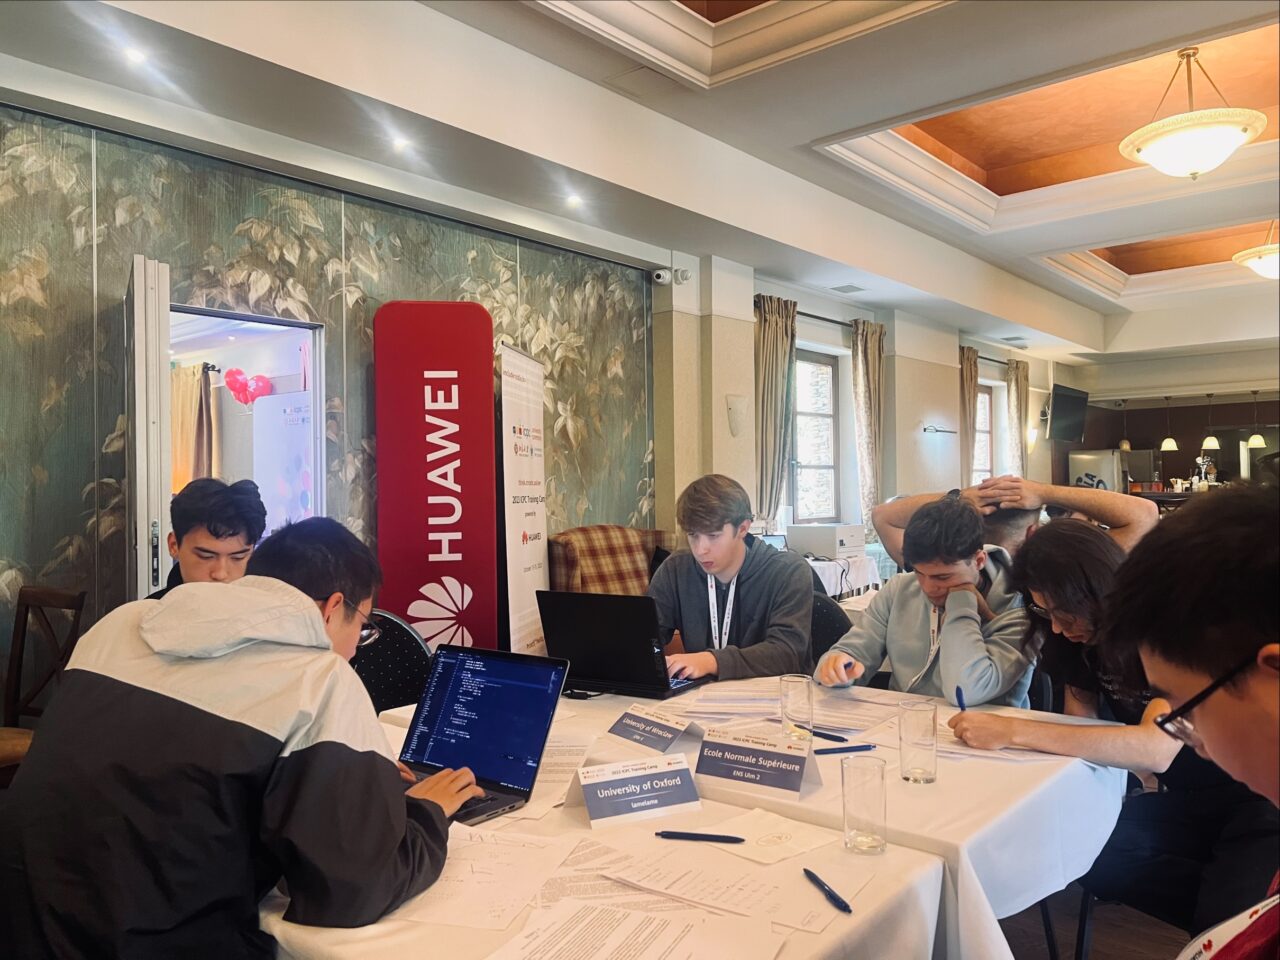 Konkurs ICPC organizowany przez Huawei, uczestnicy pracują na laptopach nad rozwiązaniem zadania